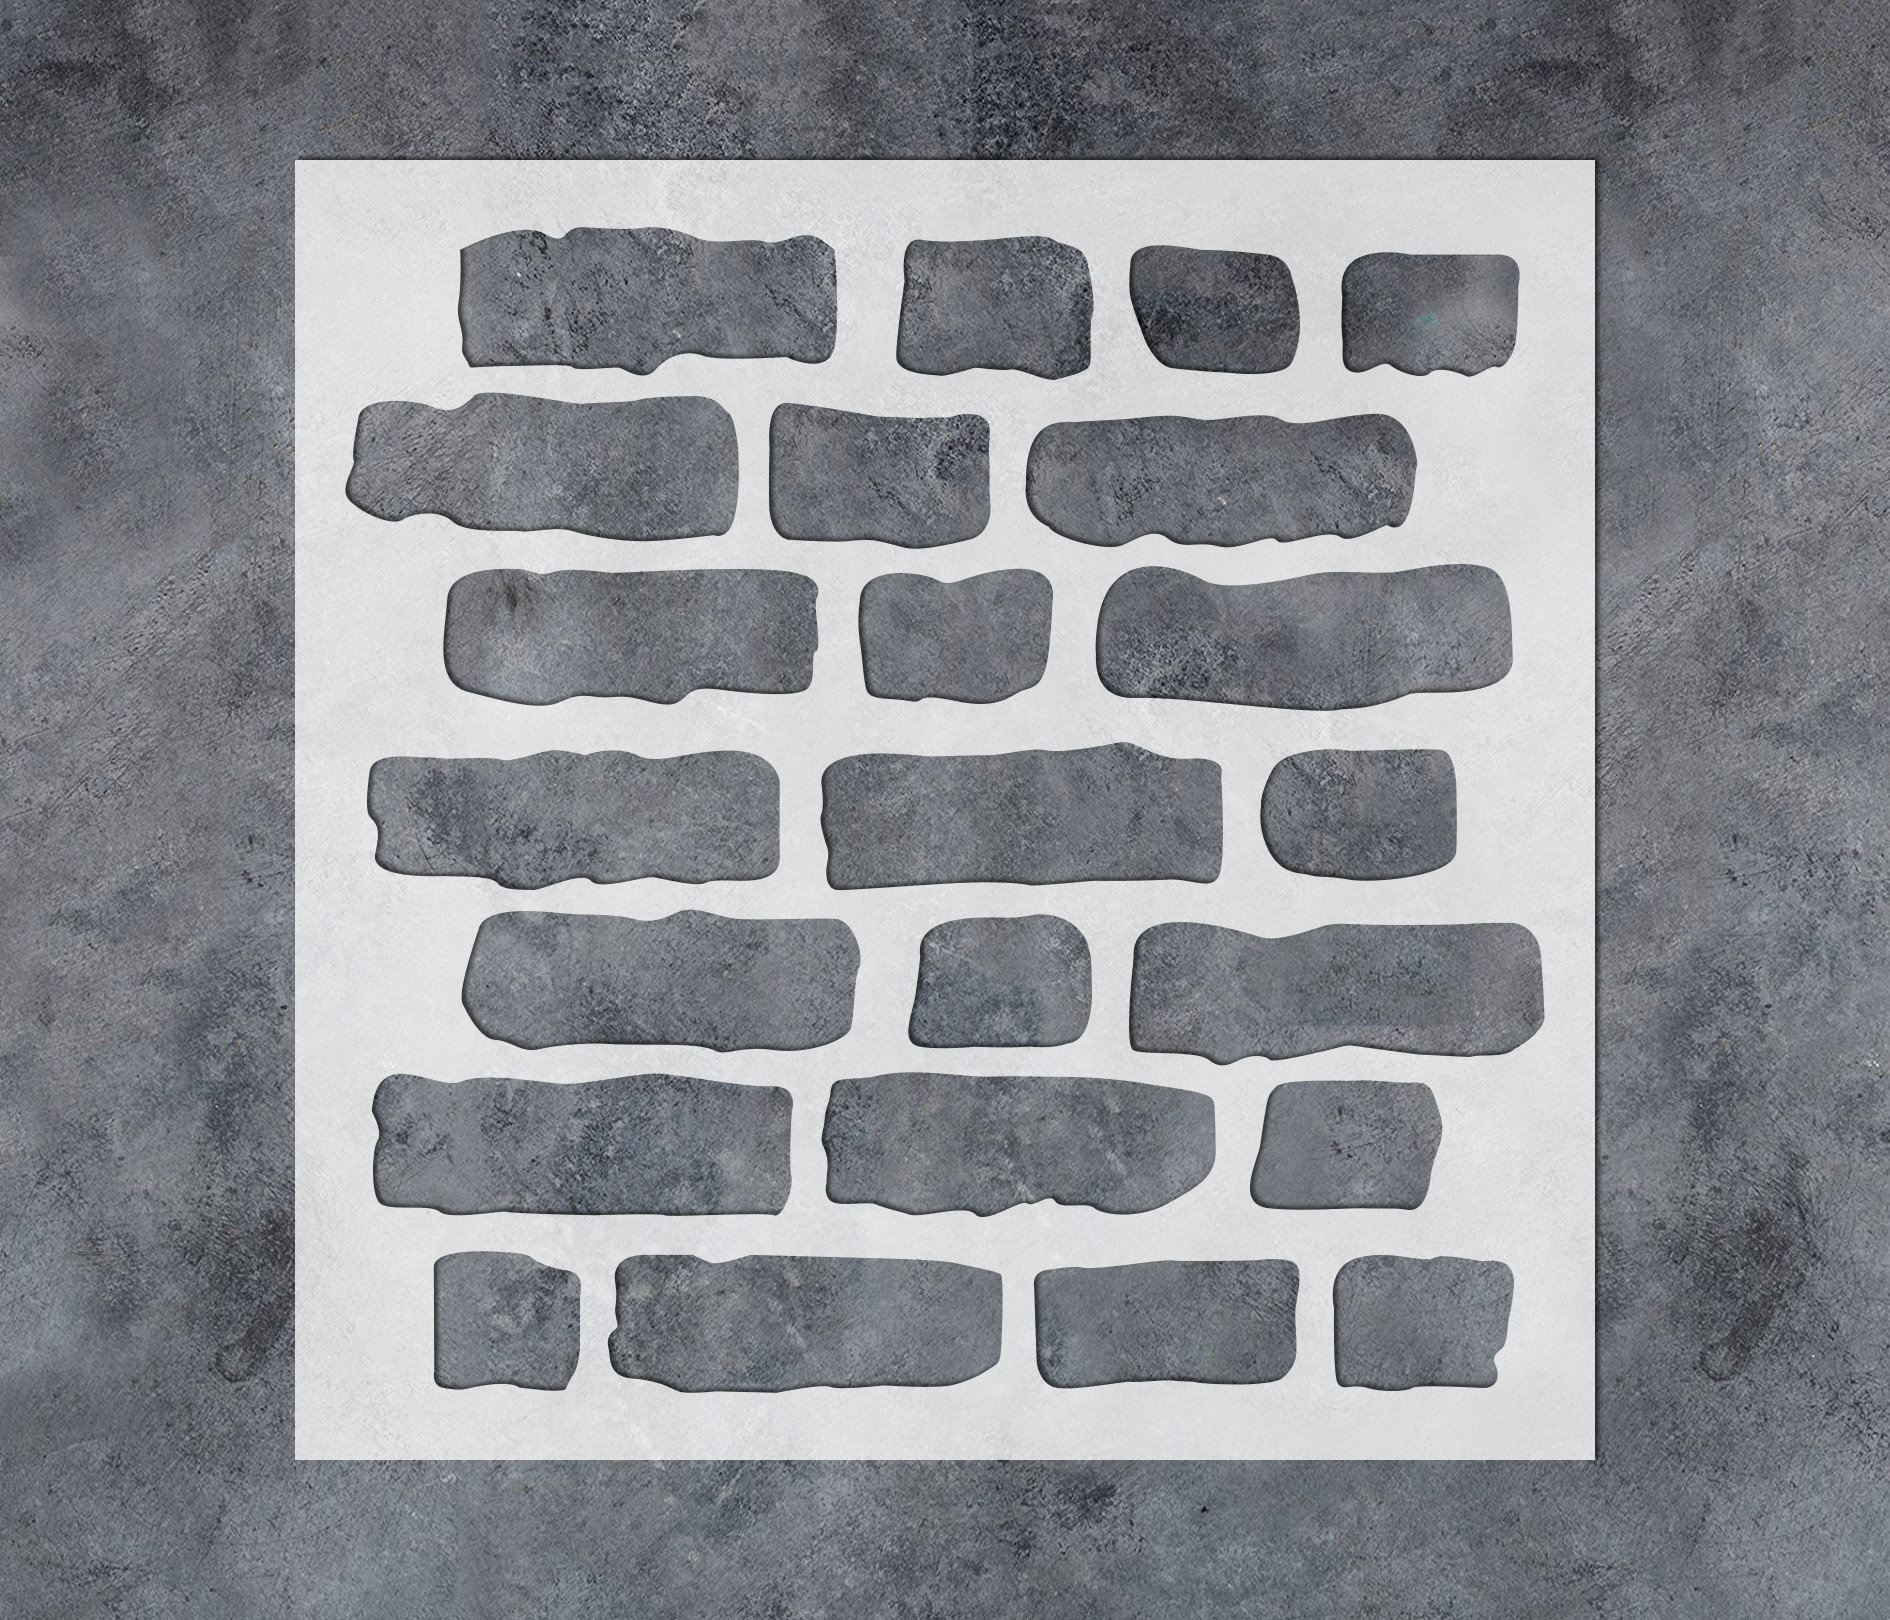 STENCIL- Brick Wall